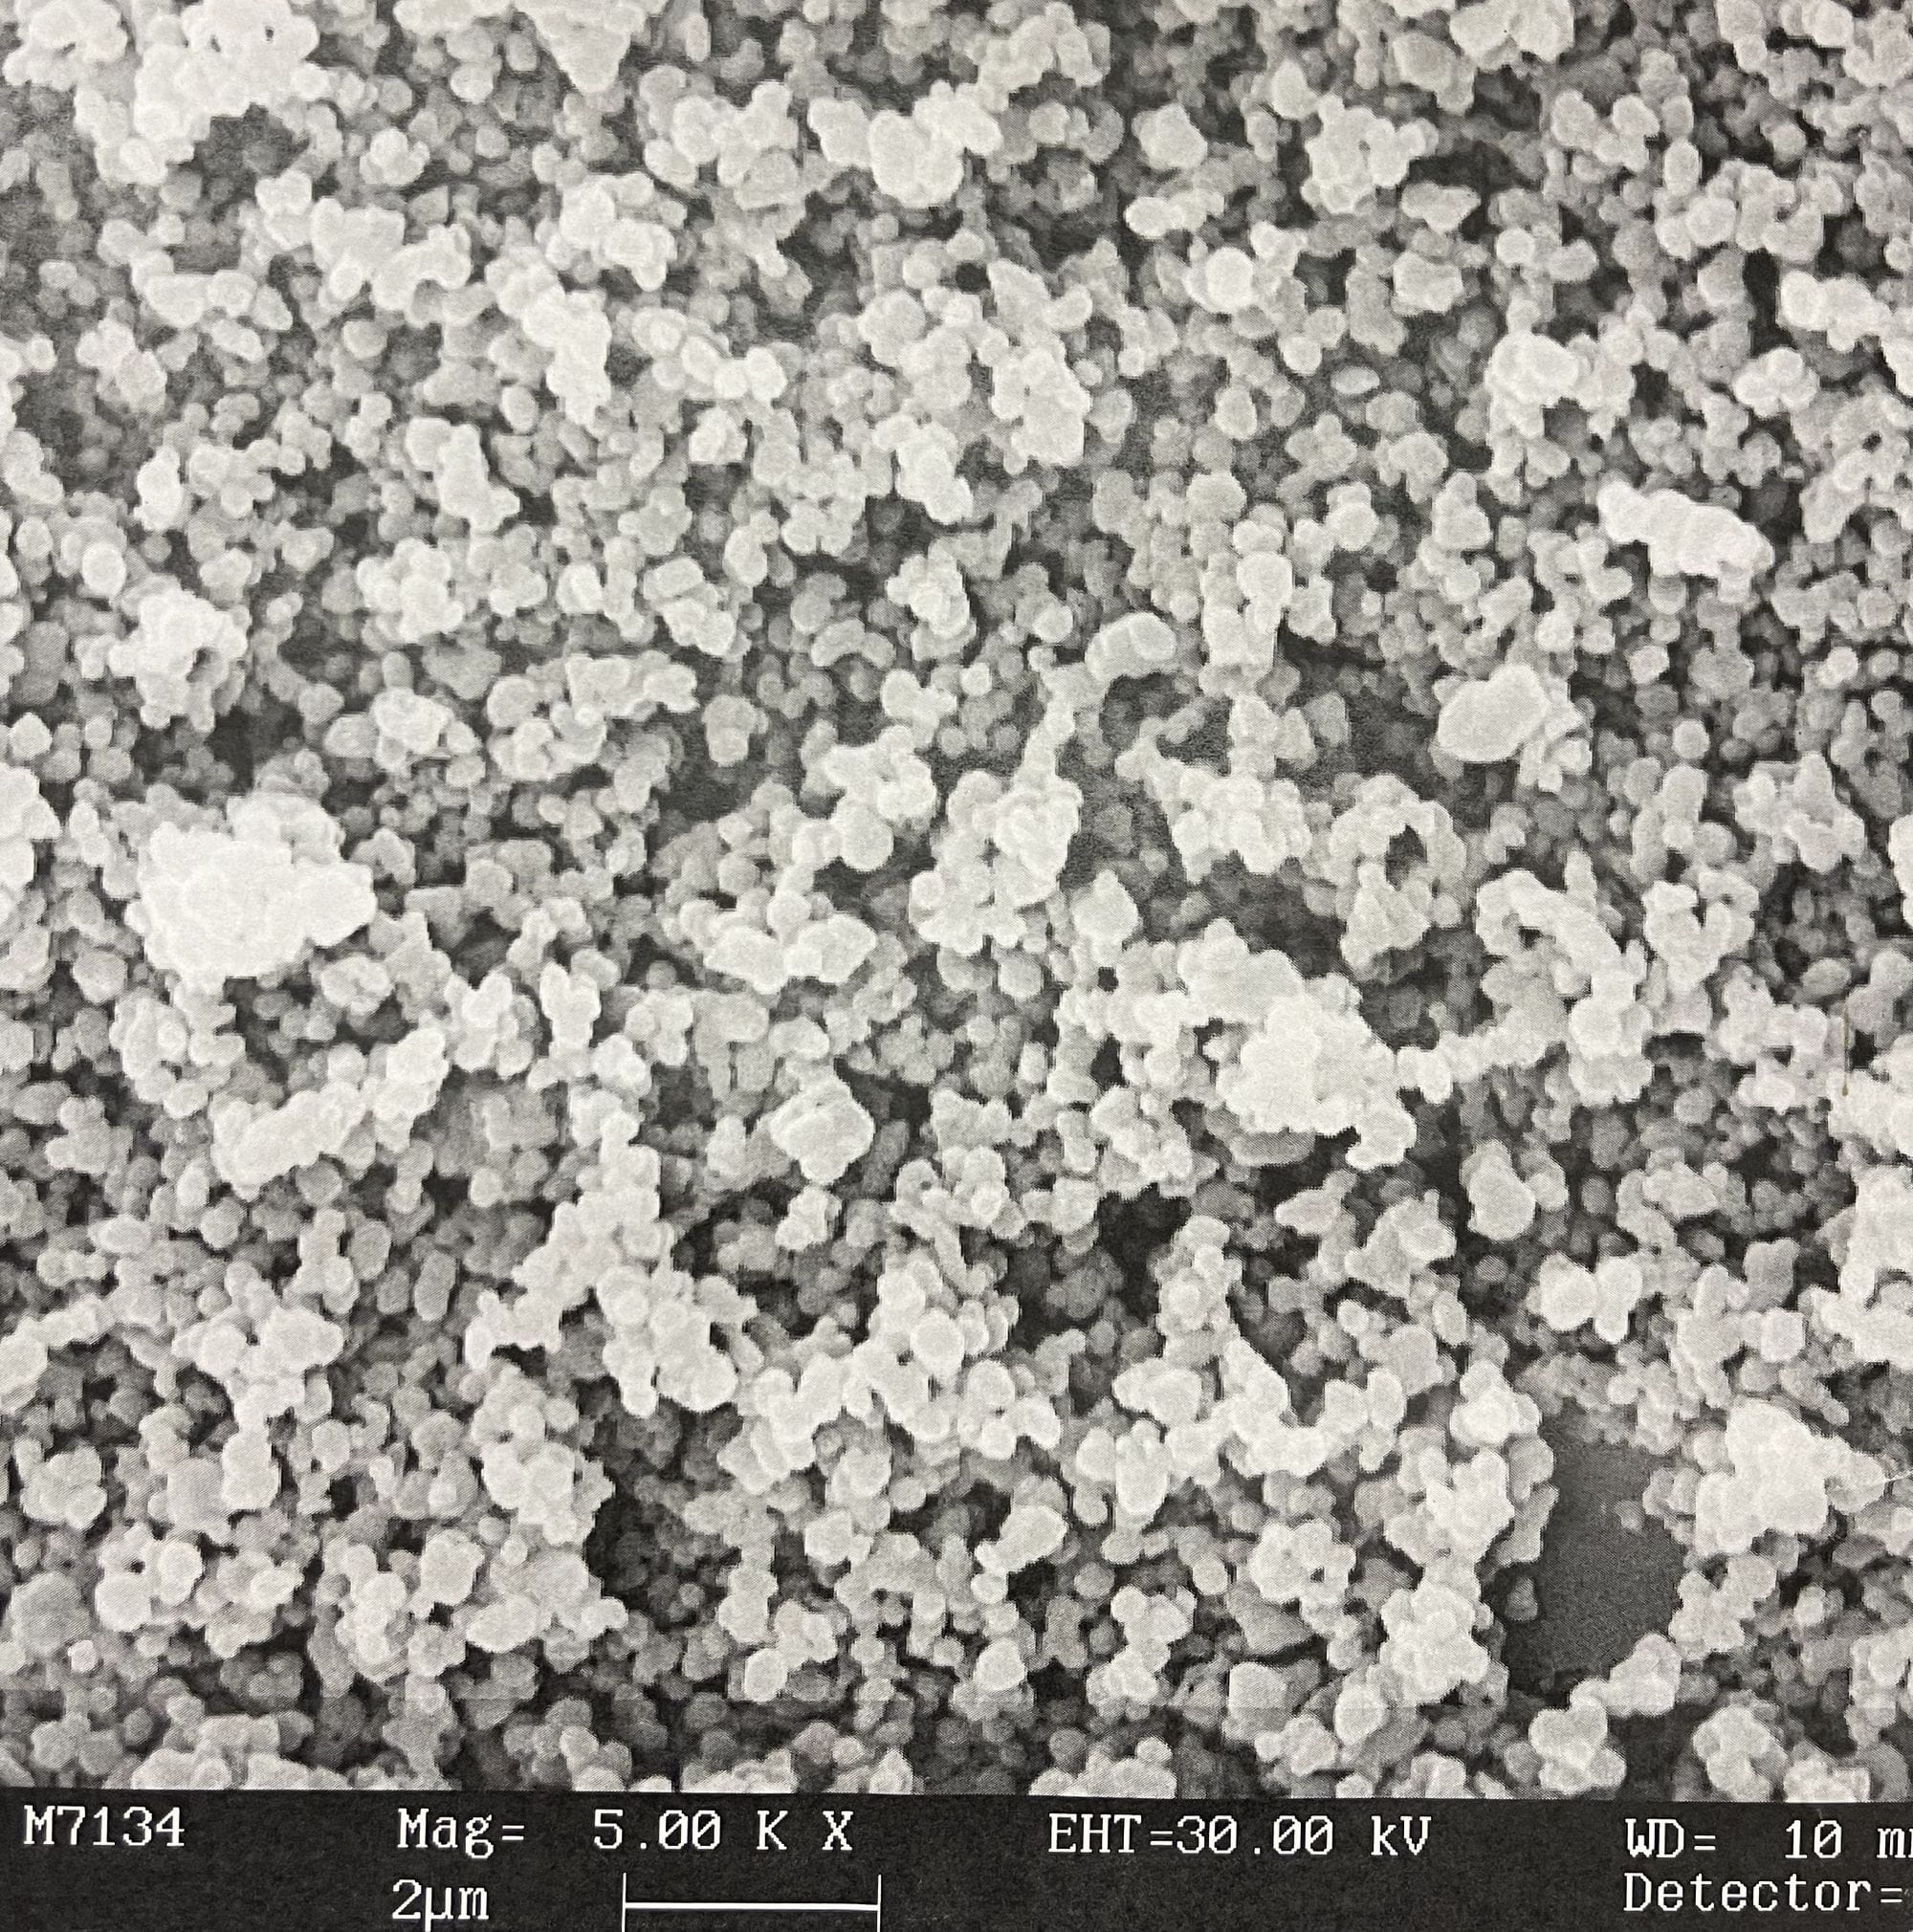 Organische, auf Erdölbasis gewonnene Farbe unter dem Mikroskop